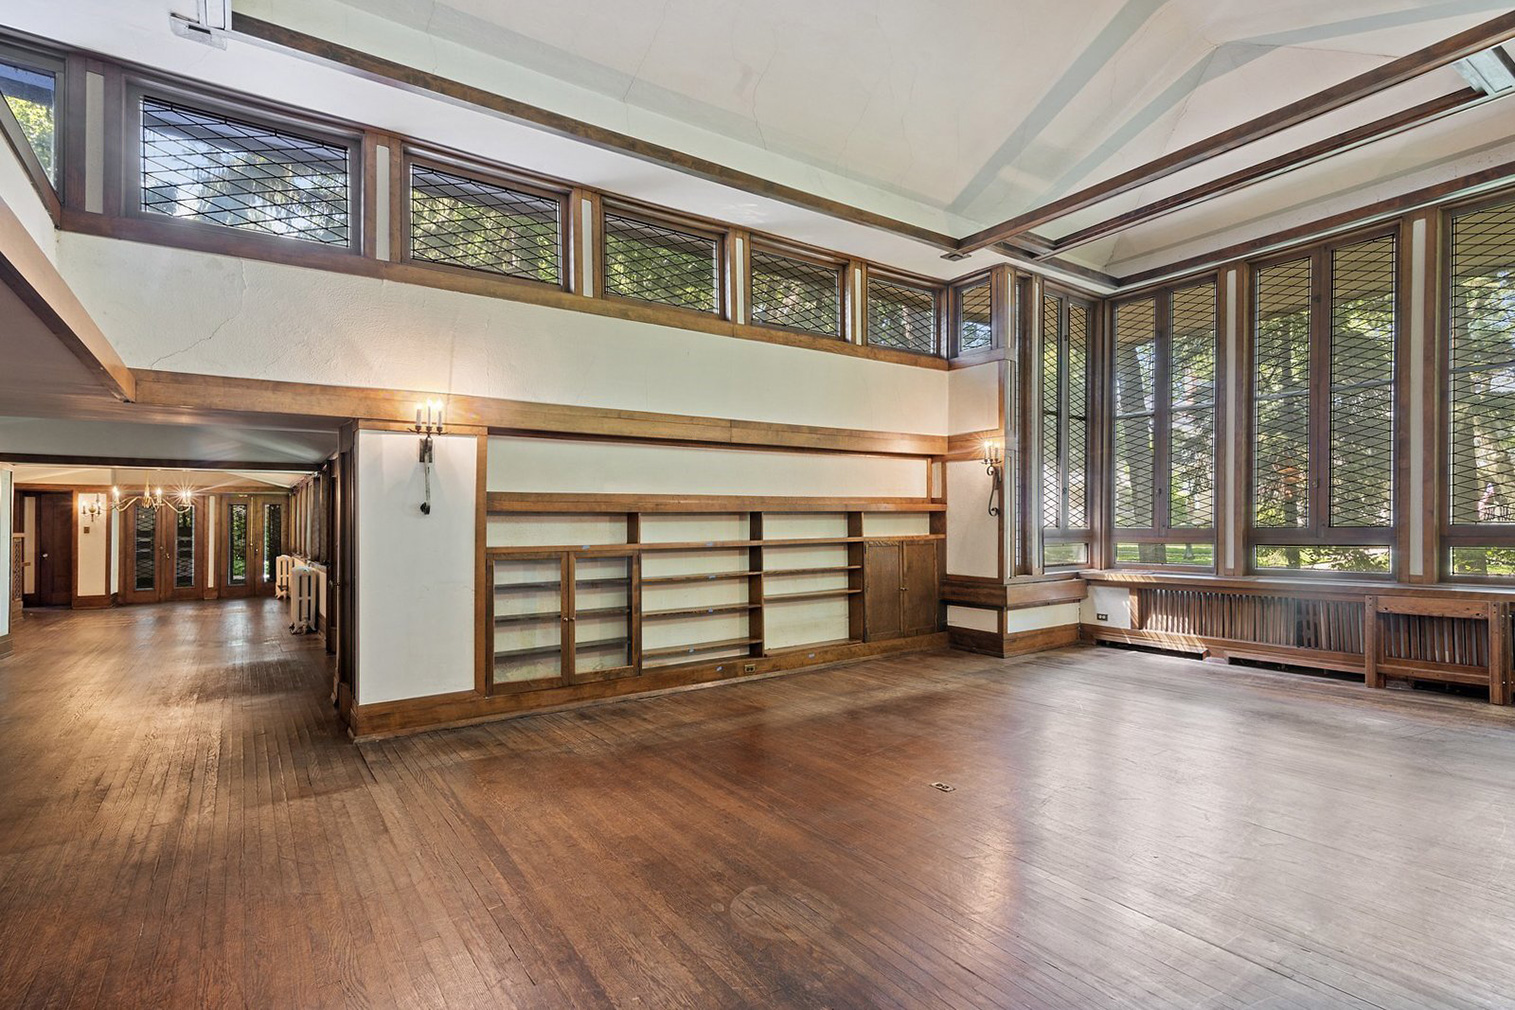 Frank Lloyd Wright's Frank J Baker House built in 1909 - for sale via @properties